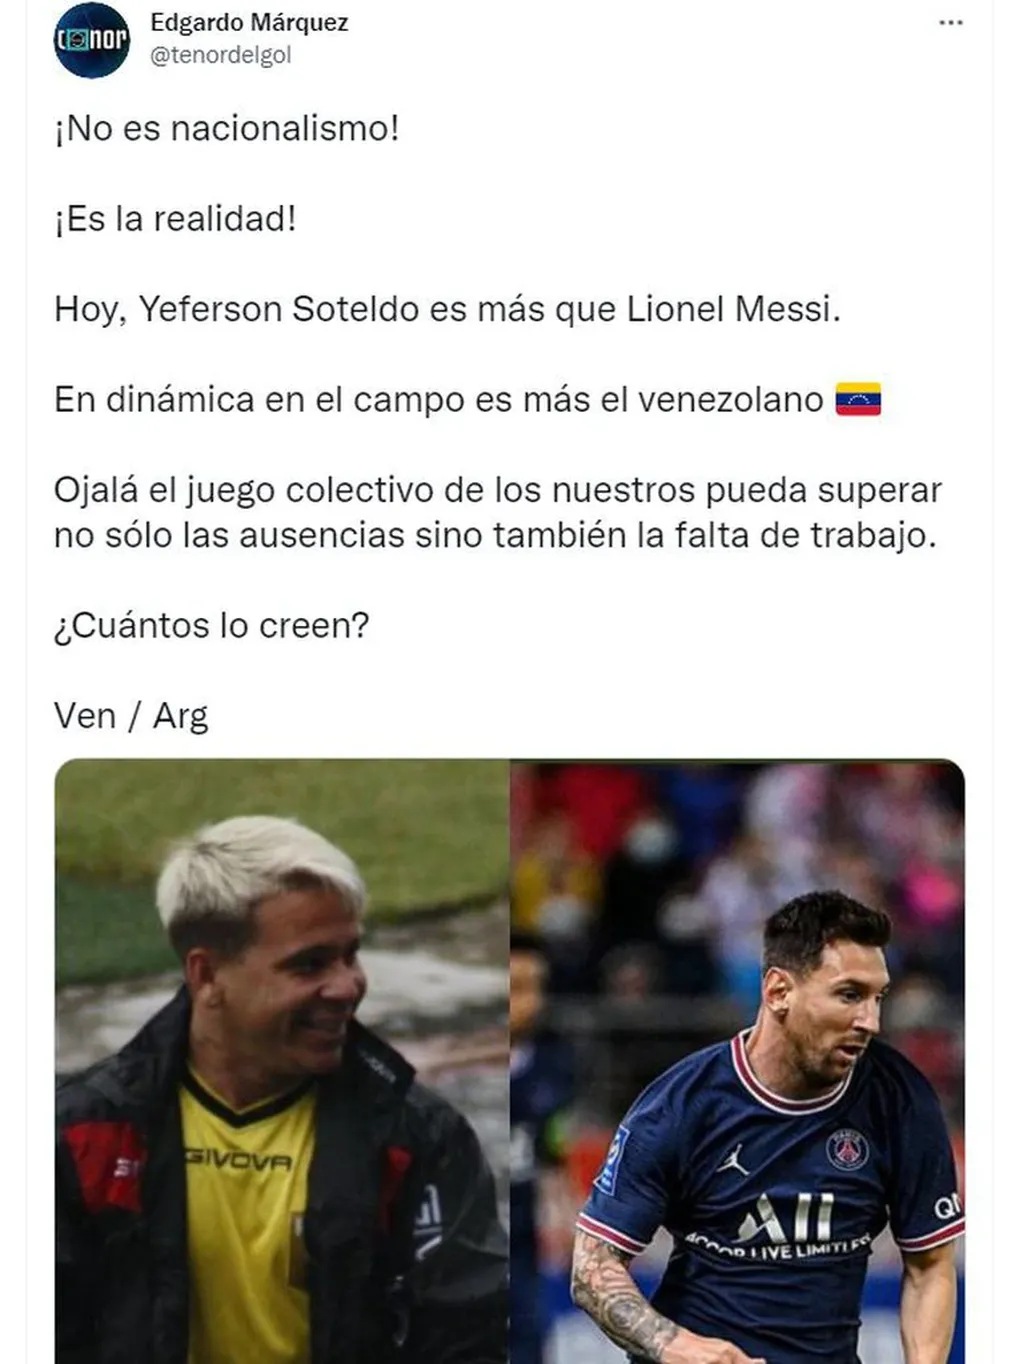 Un periodista venezolano aseguró que "Soteldo es más que Messi".